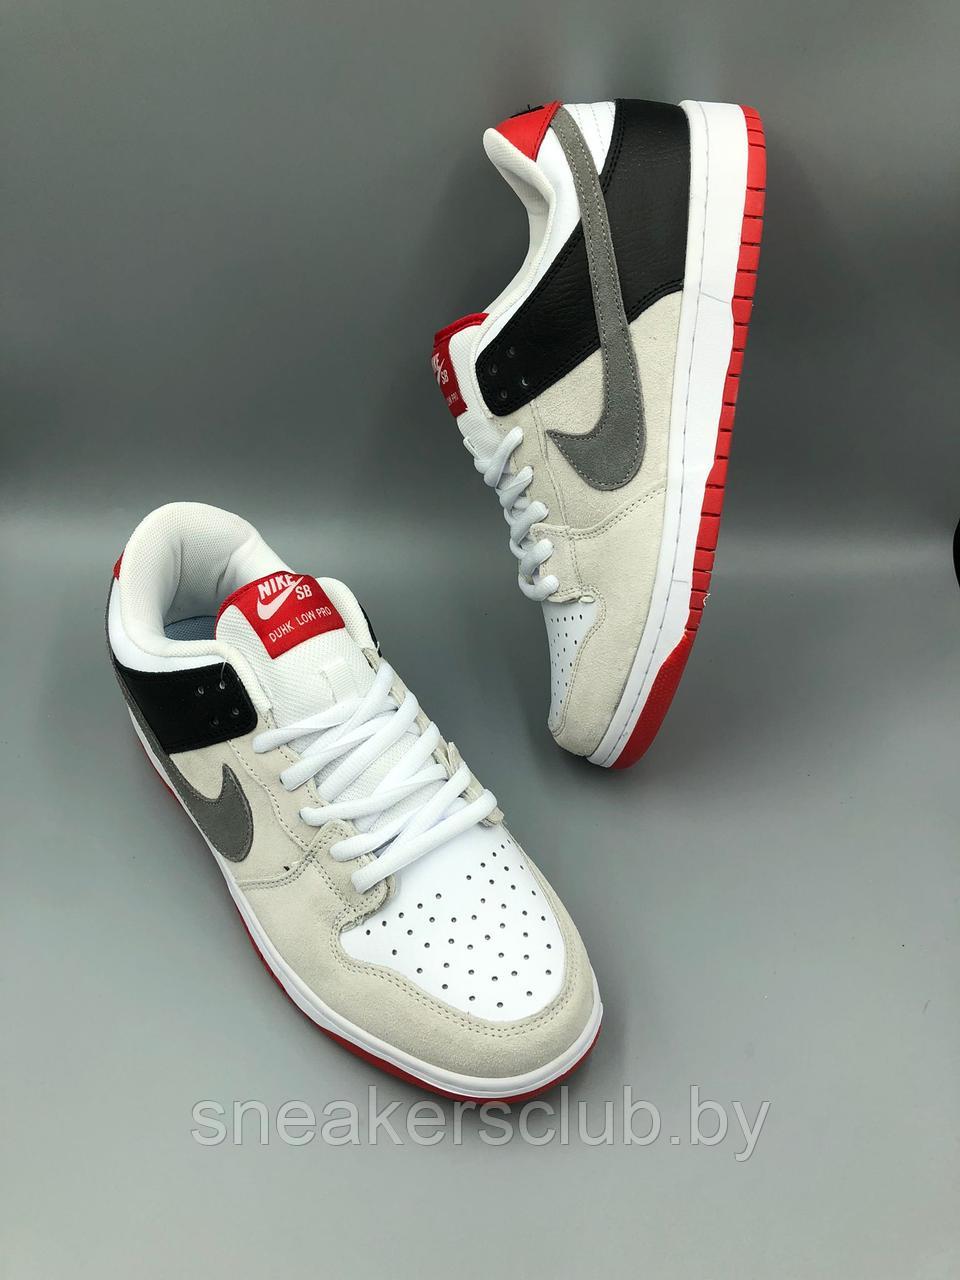 Кроссовки мужские Nike SB / демисезонные/ повседневные серо-черно-красные